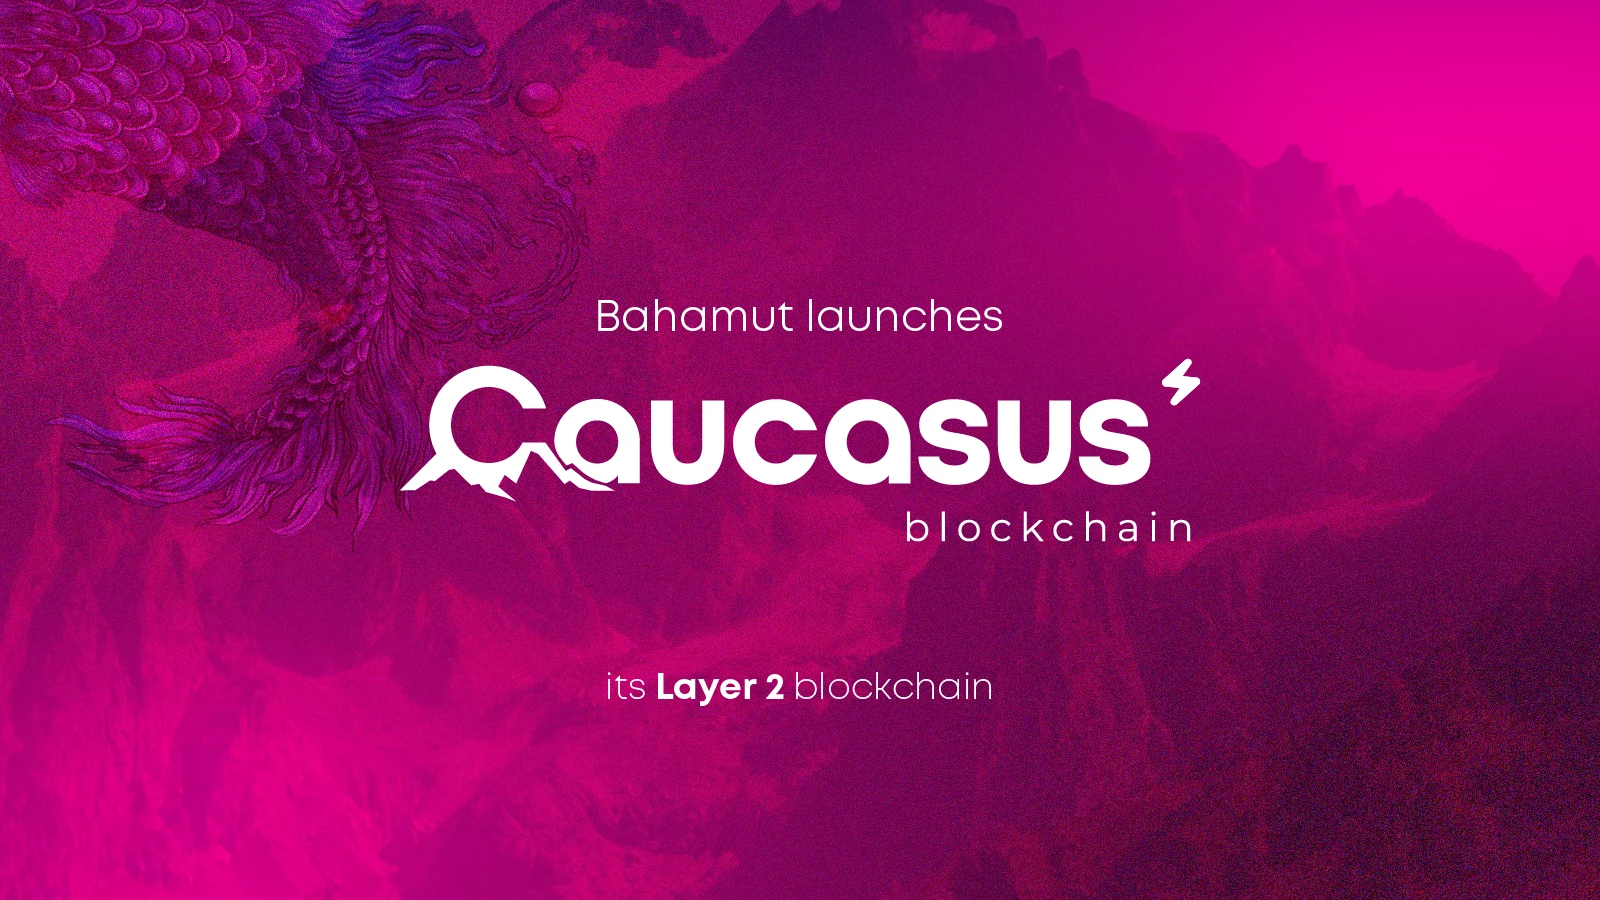 Bahamut запускает  блокчейн второго уровня (Layer 2) -  Caucasus